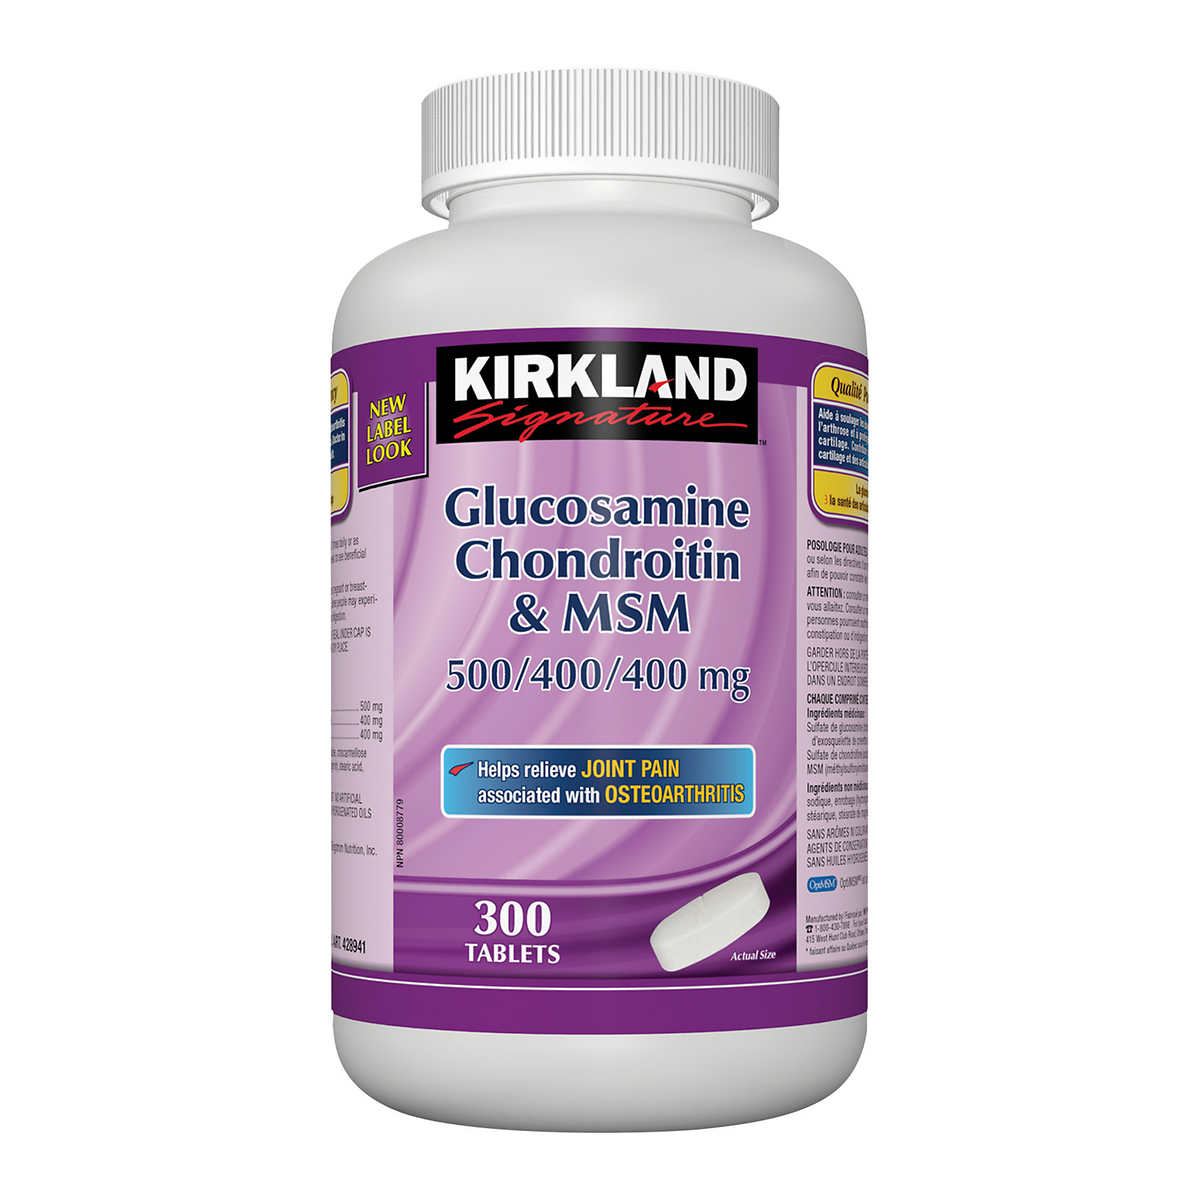 Chondroitin glucosamine sms. Mi a különbség a porcerősítő készítmények között?